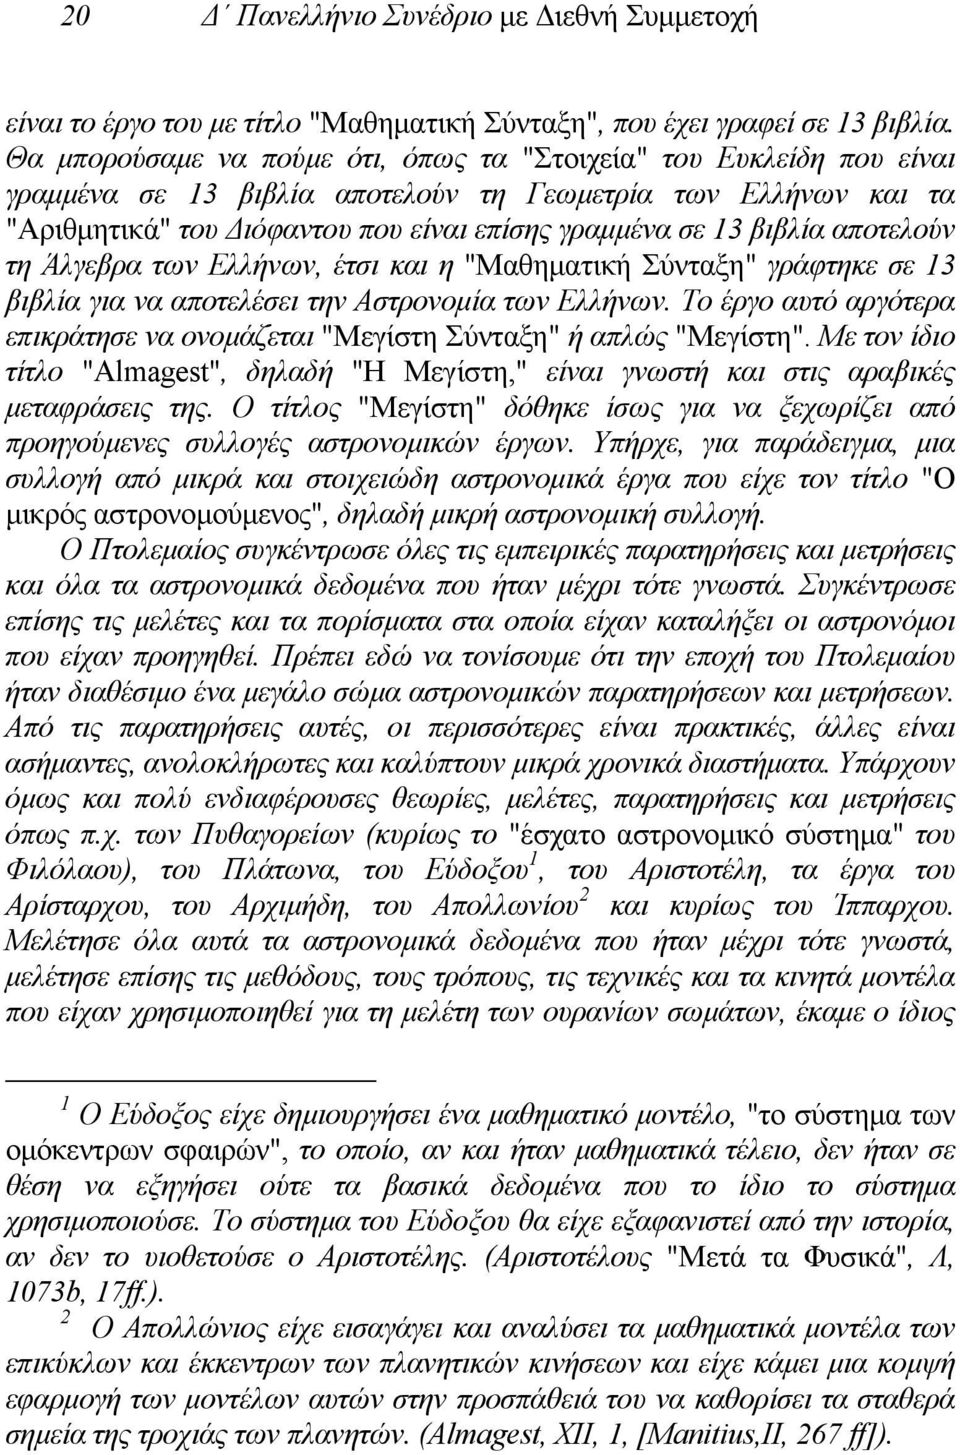 αποτελούν τη Άλγεβρα των Ελλήνων, έτσι και η "Μαθηµατική Σύνταξη" γράφτηκε σε 13 βιβλία για να αποτελέσει την Αστρονοµία των Ελλήνων.